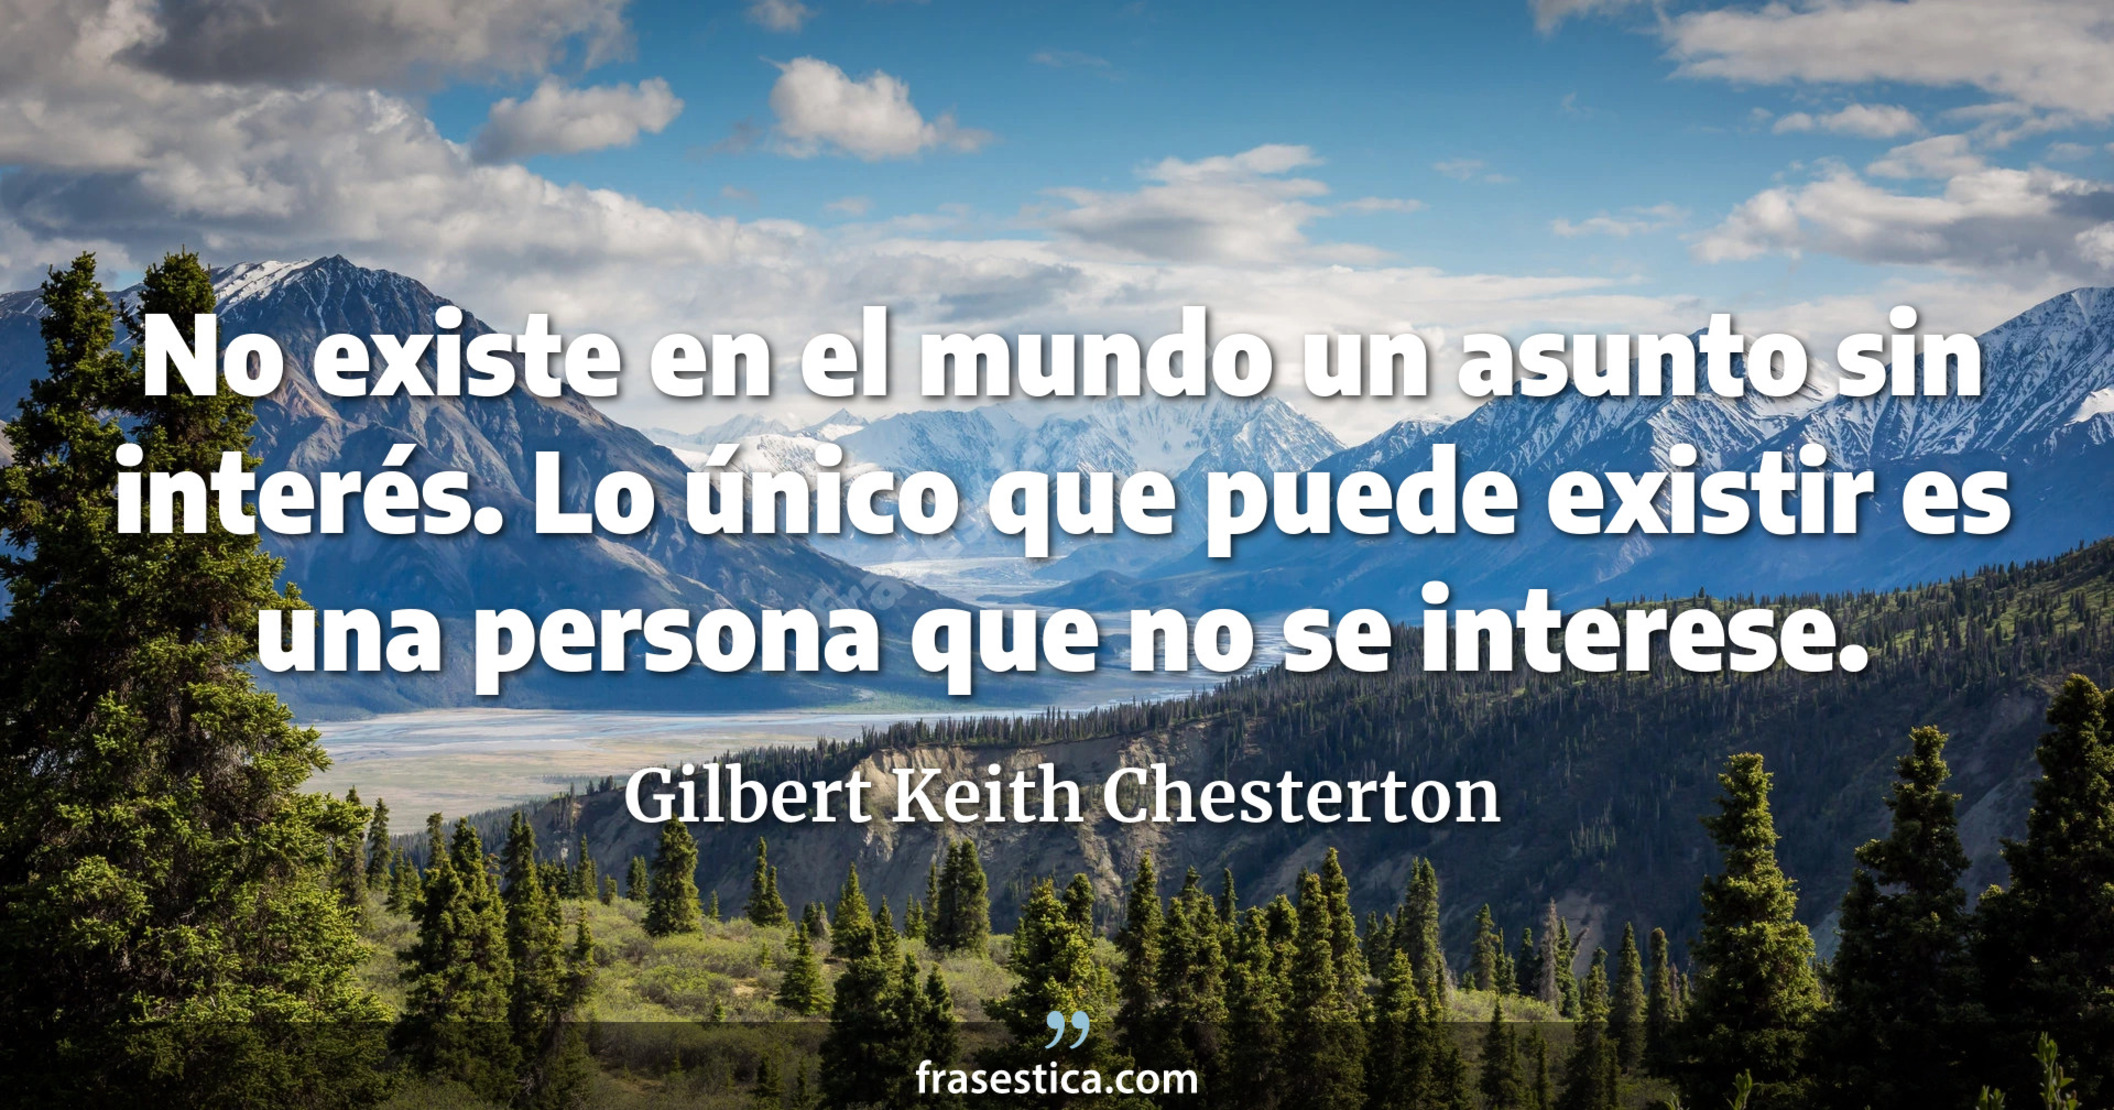 No existe en el mundo un asunto sin interés. Lo único que puede existir es una persona que no se interese. - Gilbert Keith Chesterton